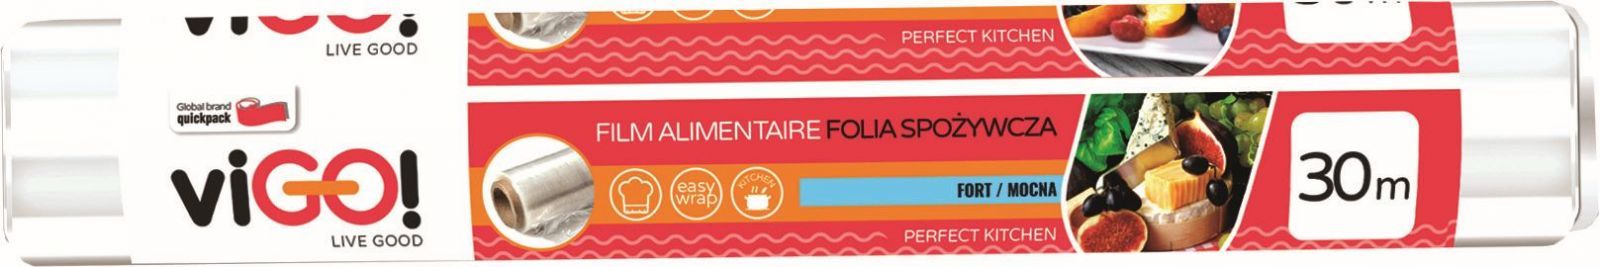 Food Foil, 30M, Vigo OTHERS